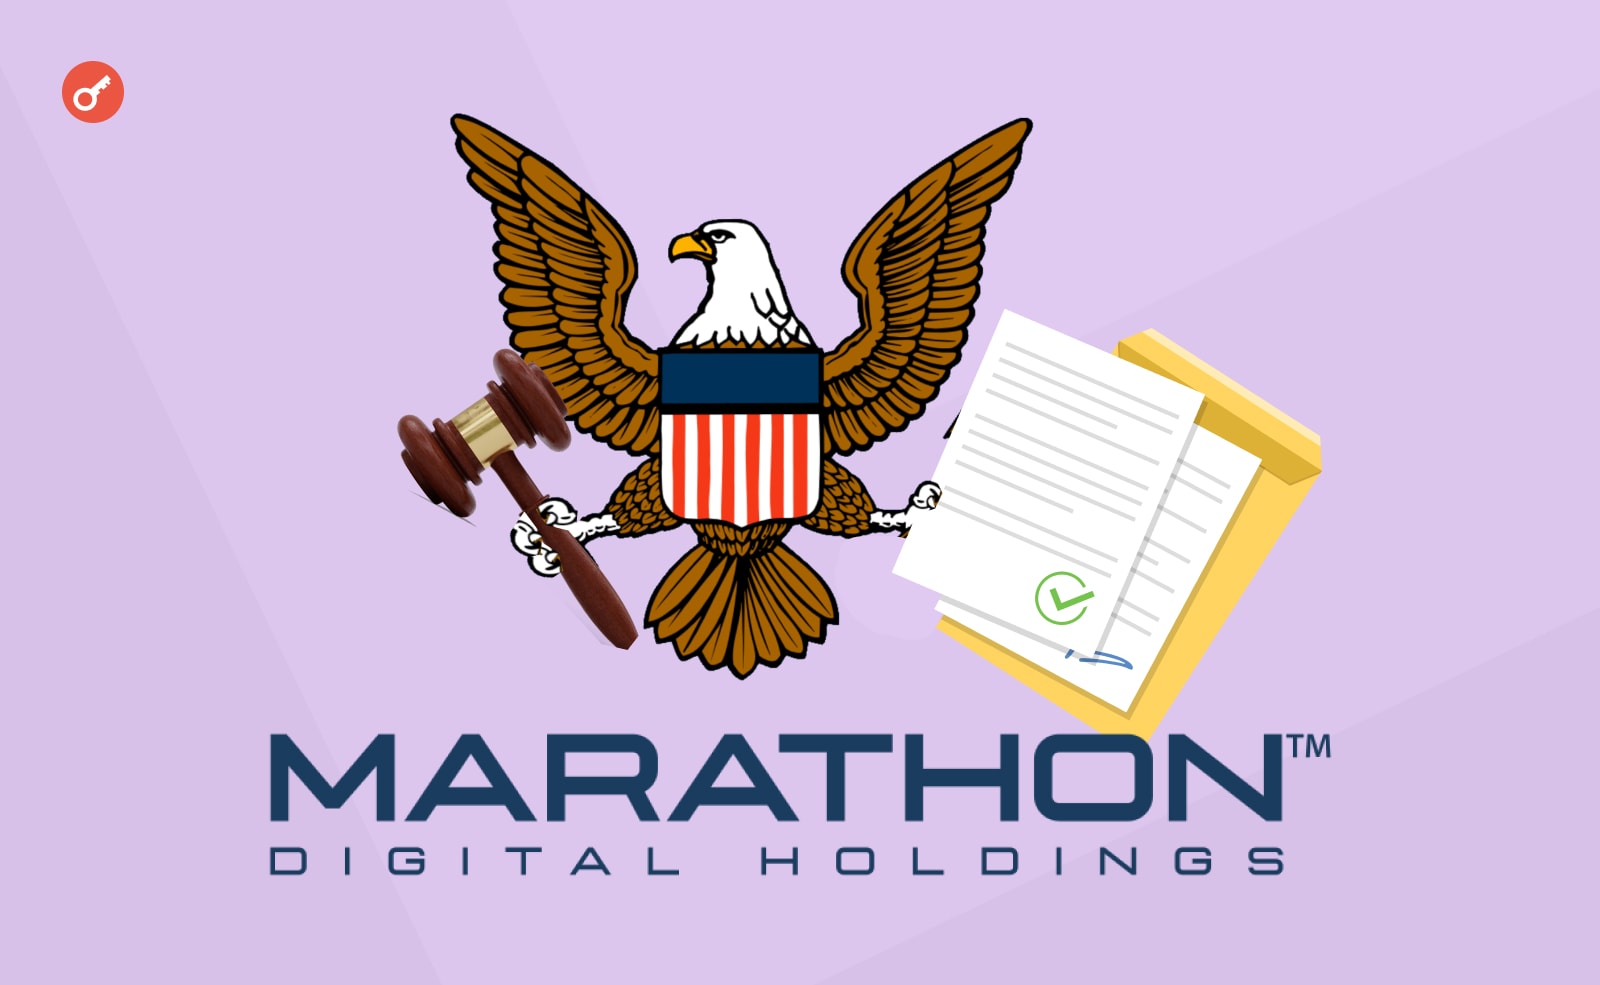 Комиссия по ценным бумагам и биржам (SEC) опубликовала заявление касательно Marathon Digital.